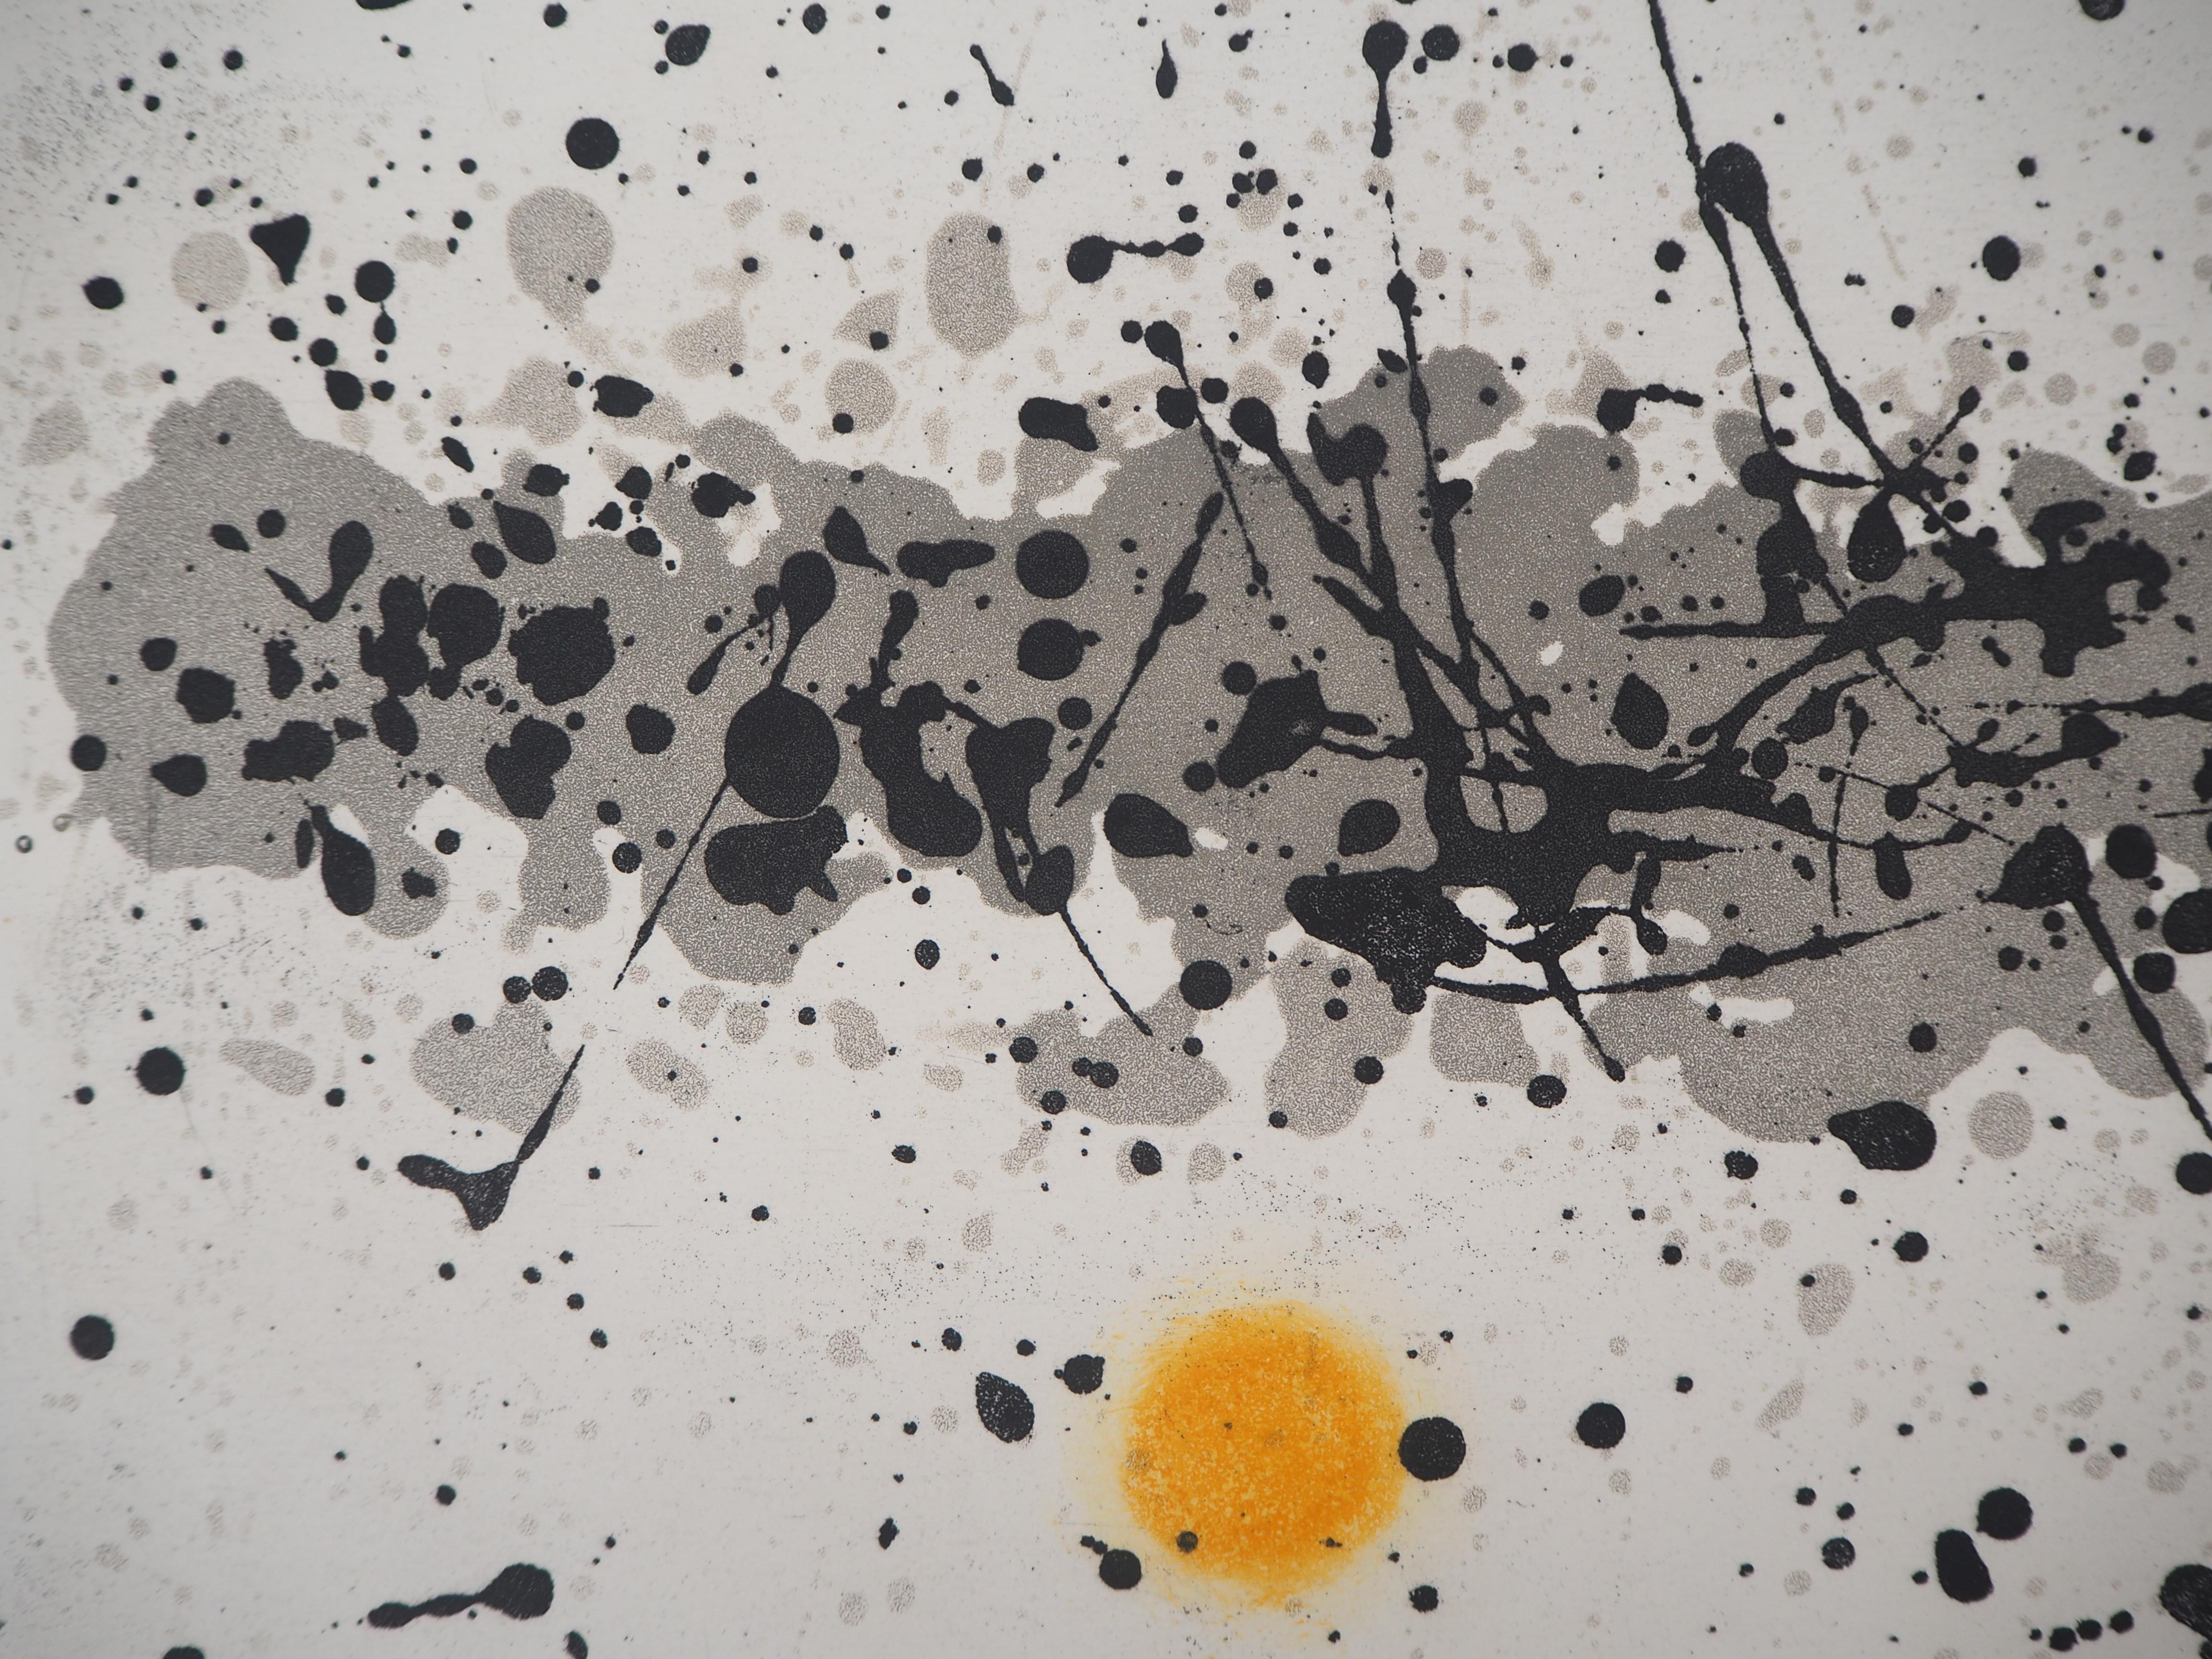 Ouvrage du vent III – Farbradierung und Aquatinta, handsigniert (Dupin #344) (Grau), Abstract Print, von Joan Miró